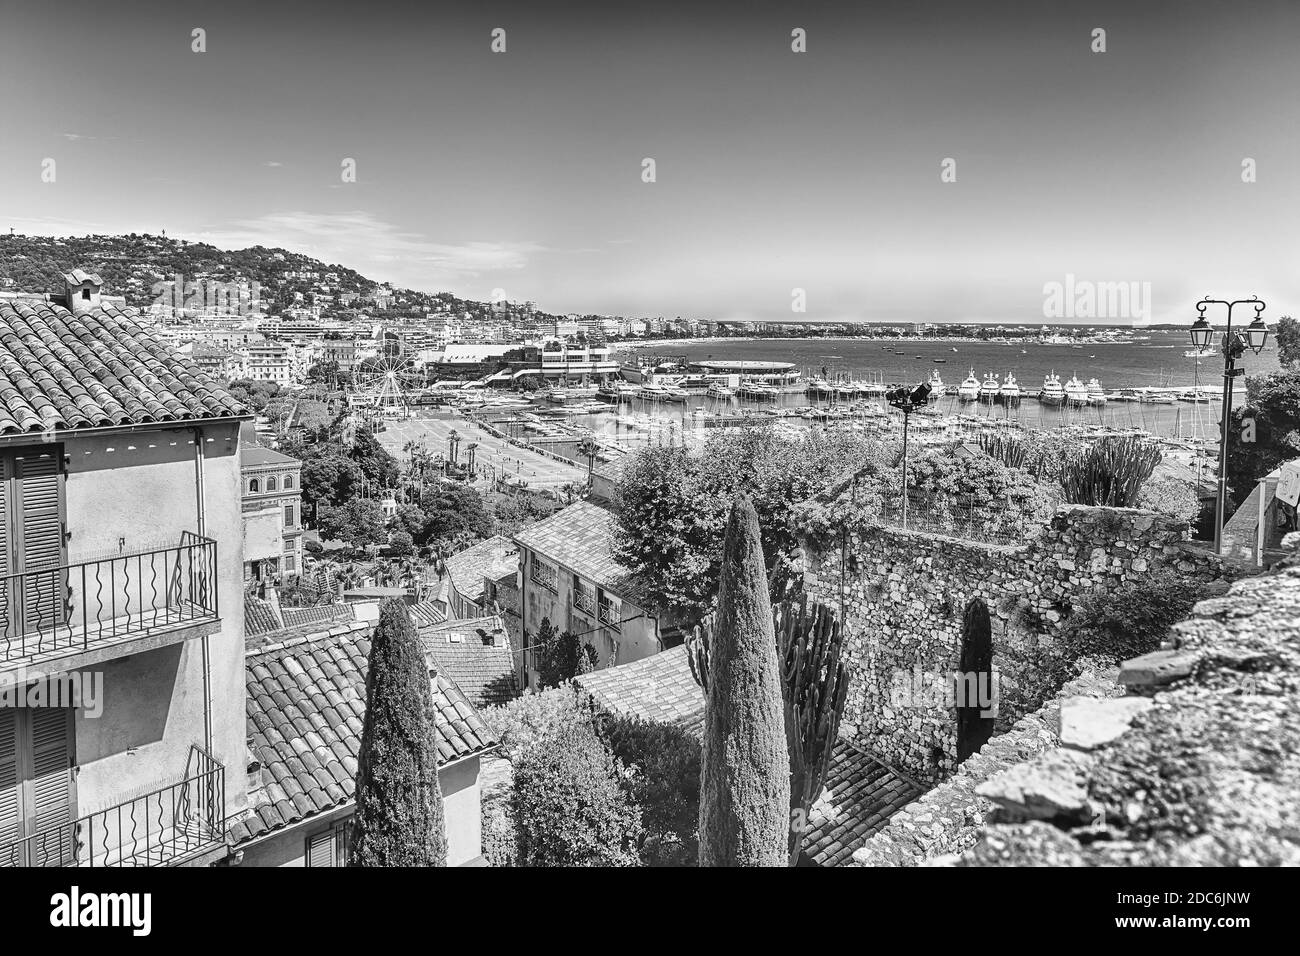 Luftaufnahme über den Vieux Port (Alter Hafen) und das Stadtzentrum von Cannes, Cote d'Azur, Frankreich Stockfoto